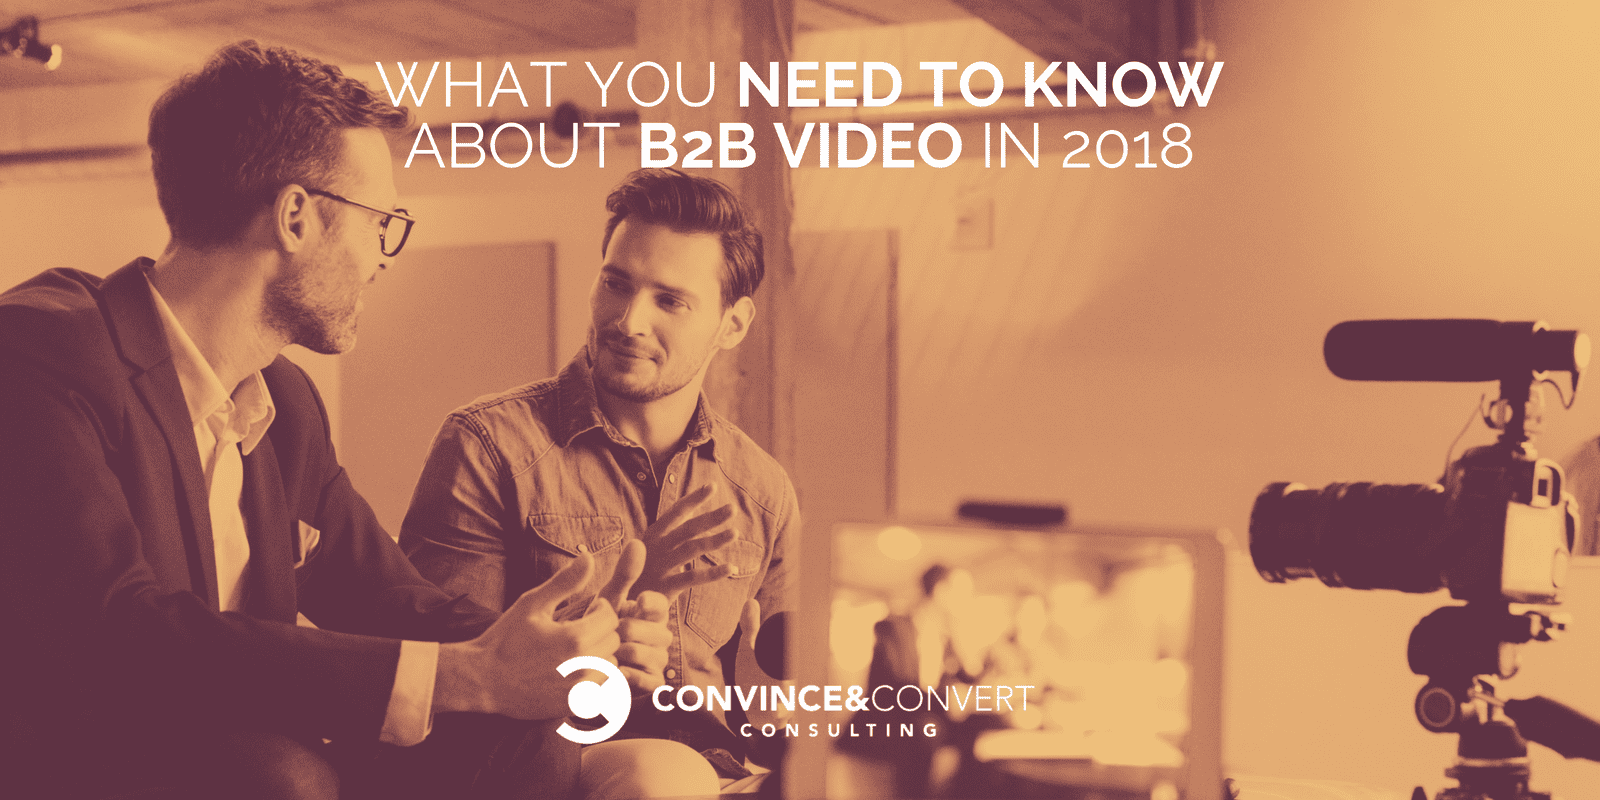 Lo que necesita saber sobre el video B2B en 2018